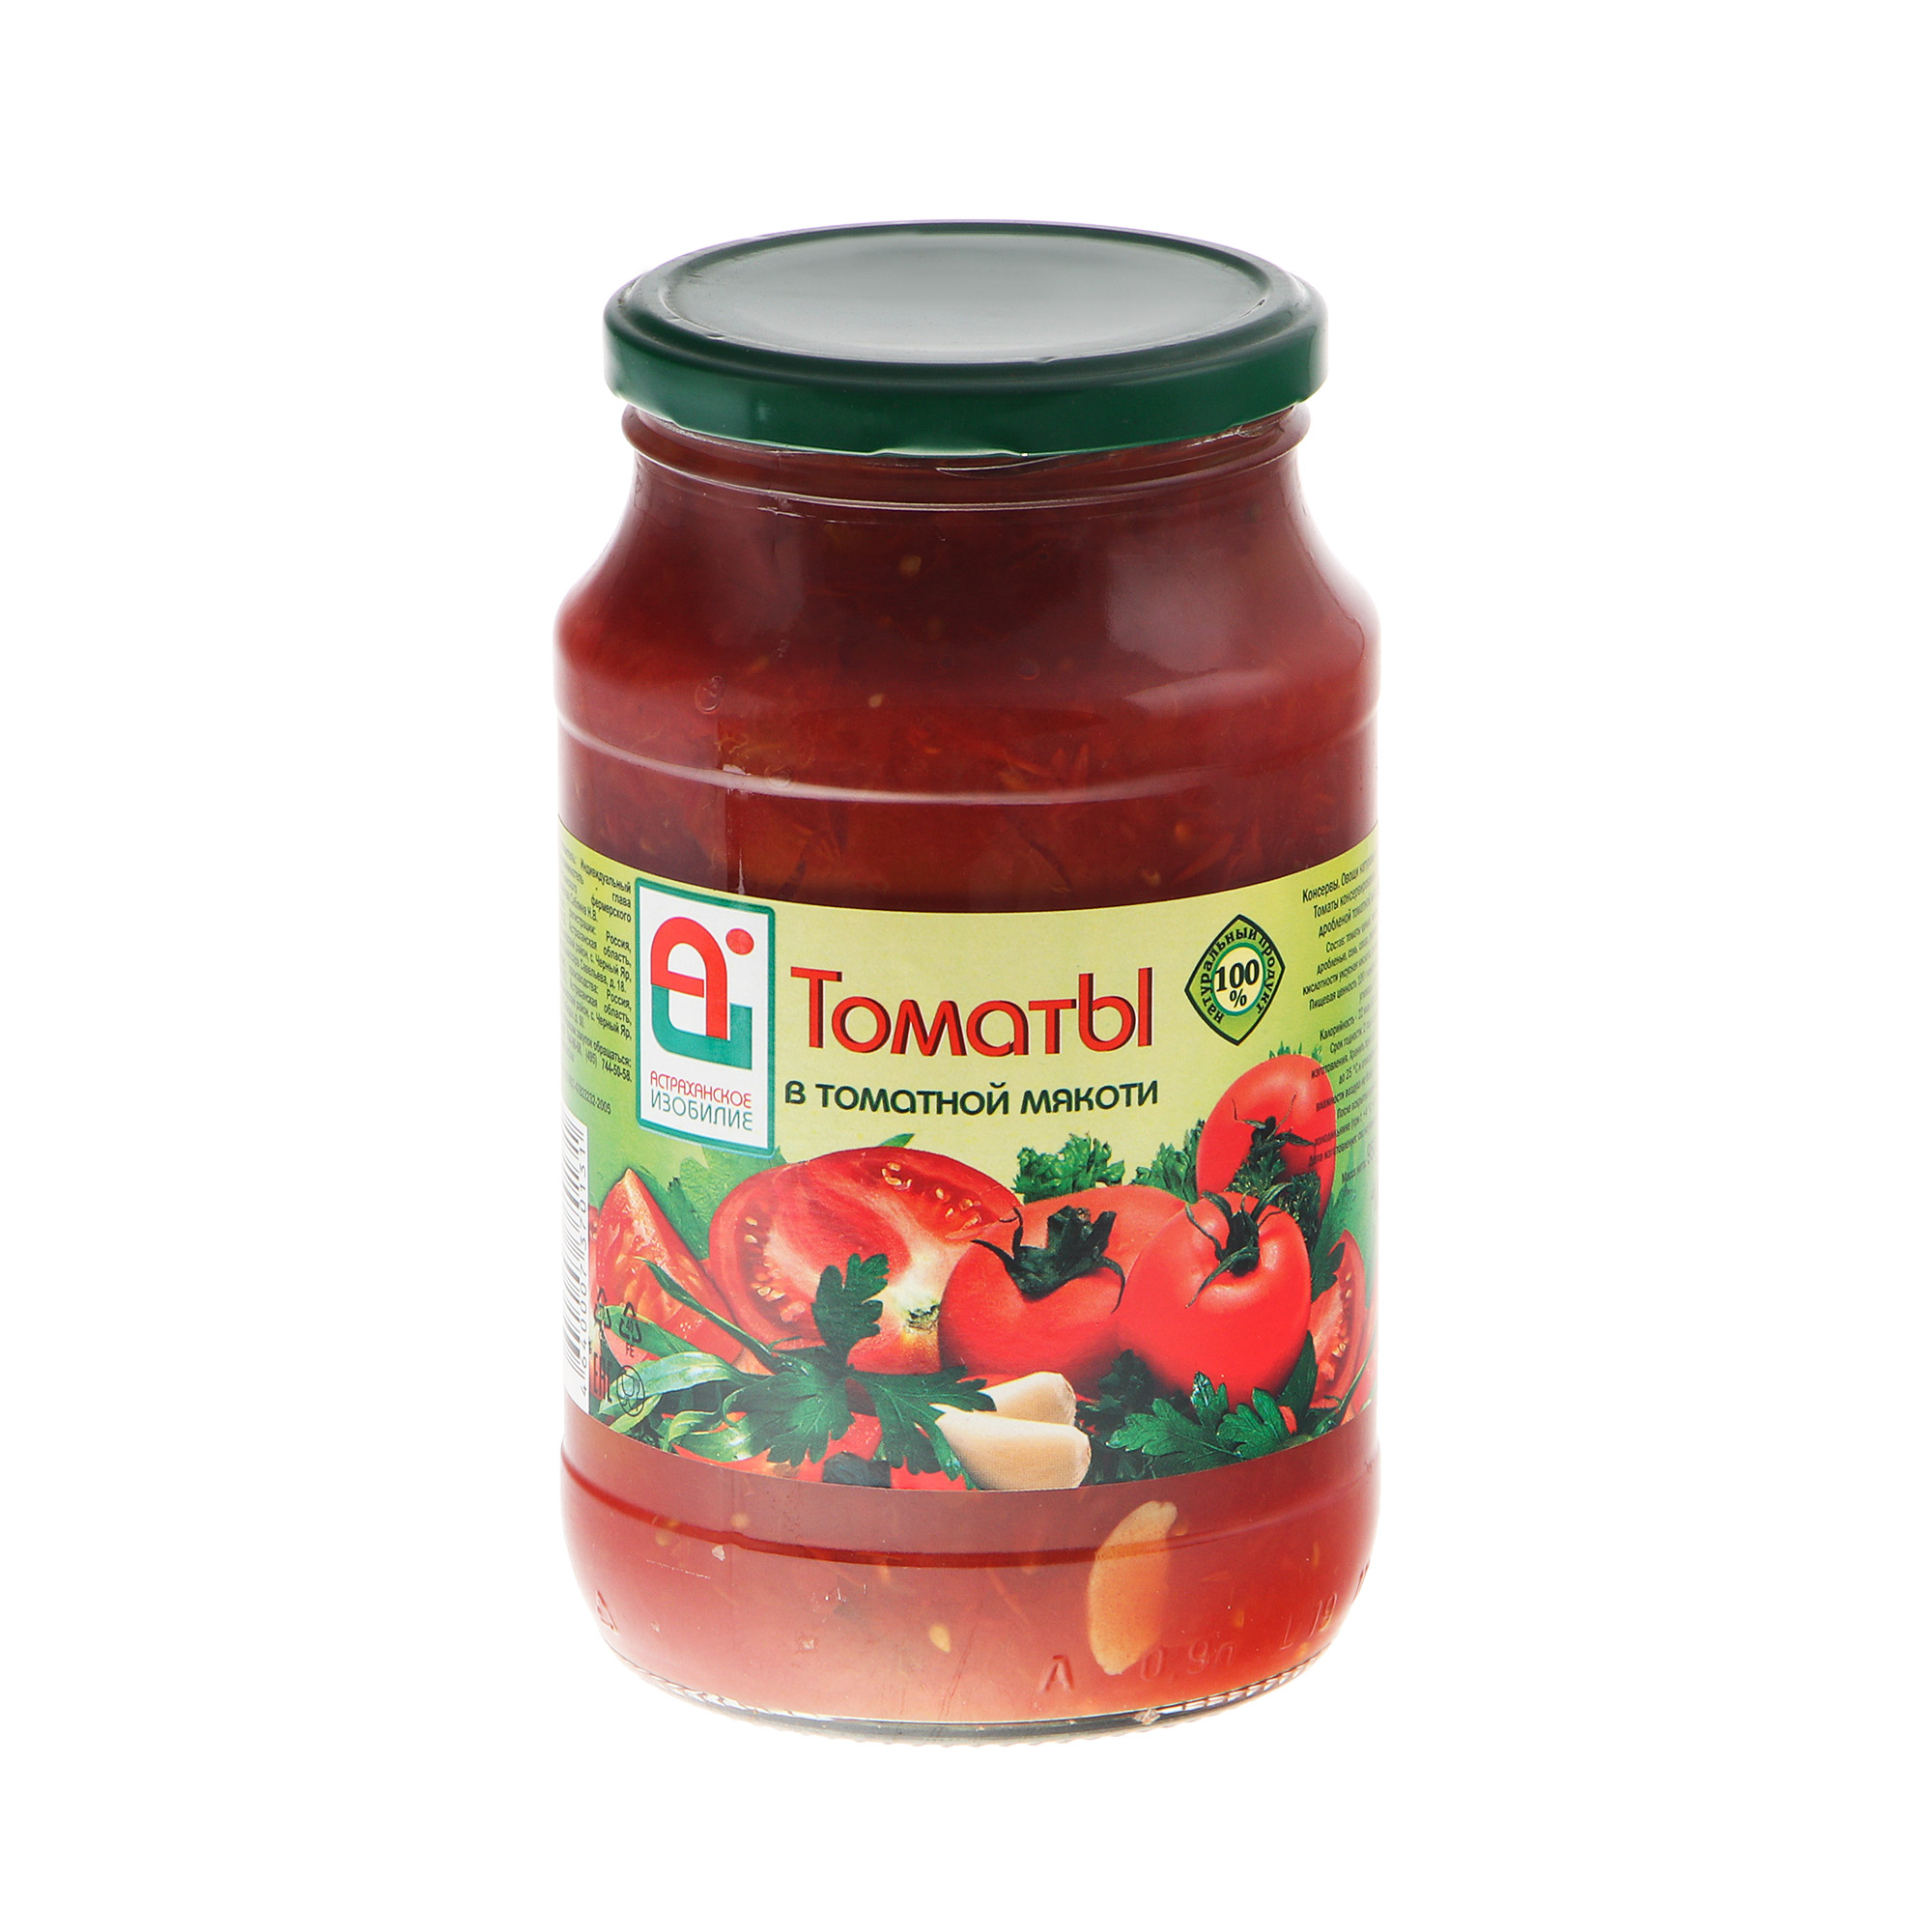 Томаты Астраханское Изобилие в мякоти 950 г томаты маринованные астраханское изобилие со сладким перцем 900 г